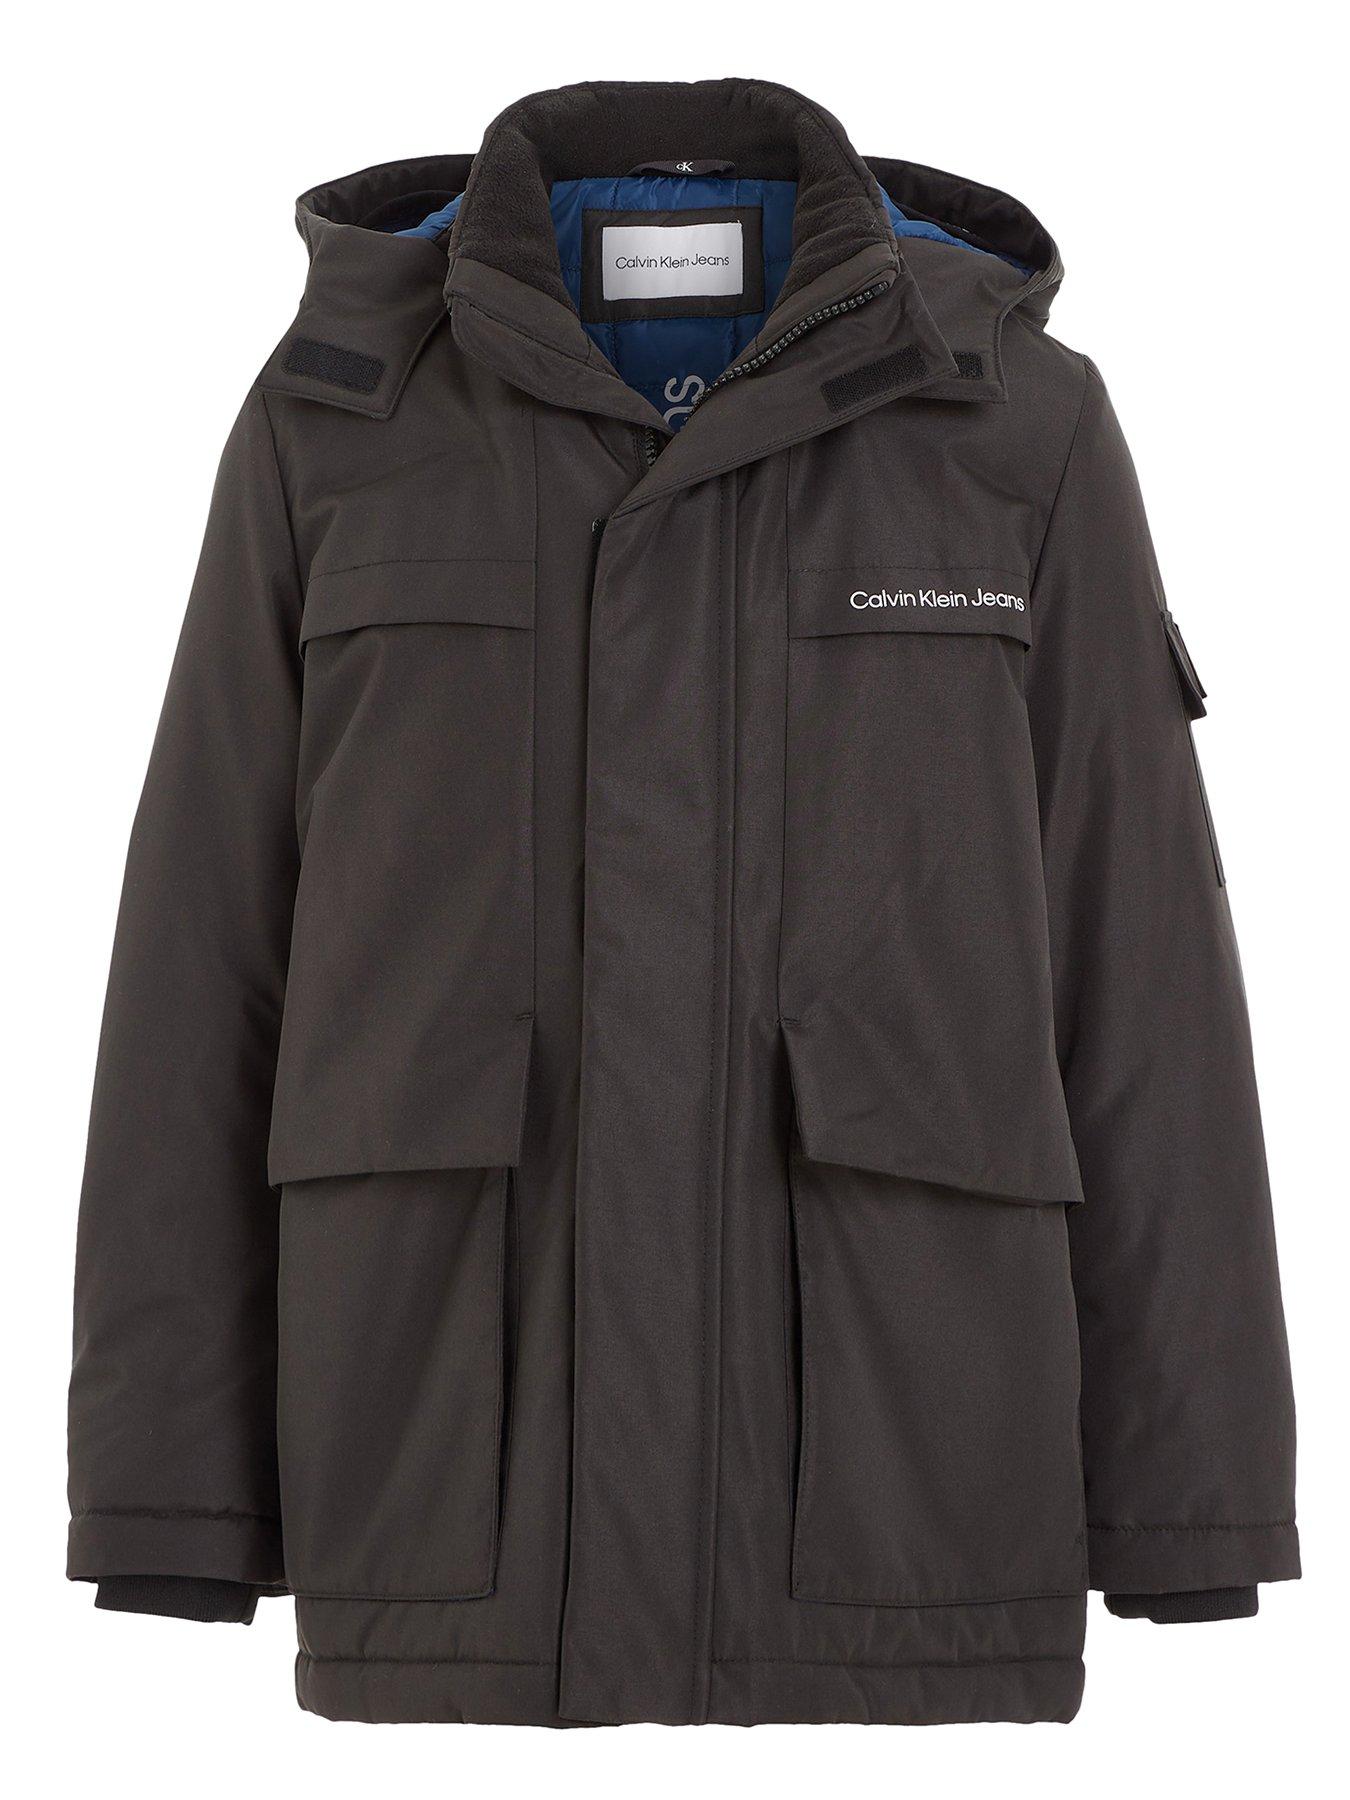 Crivit Pro Mens Waterproof Winter Jacket Warm Coat Ski Hooded size